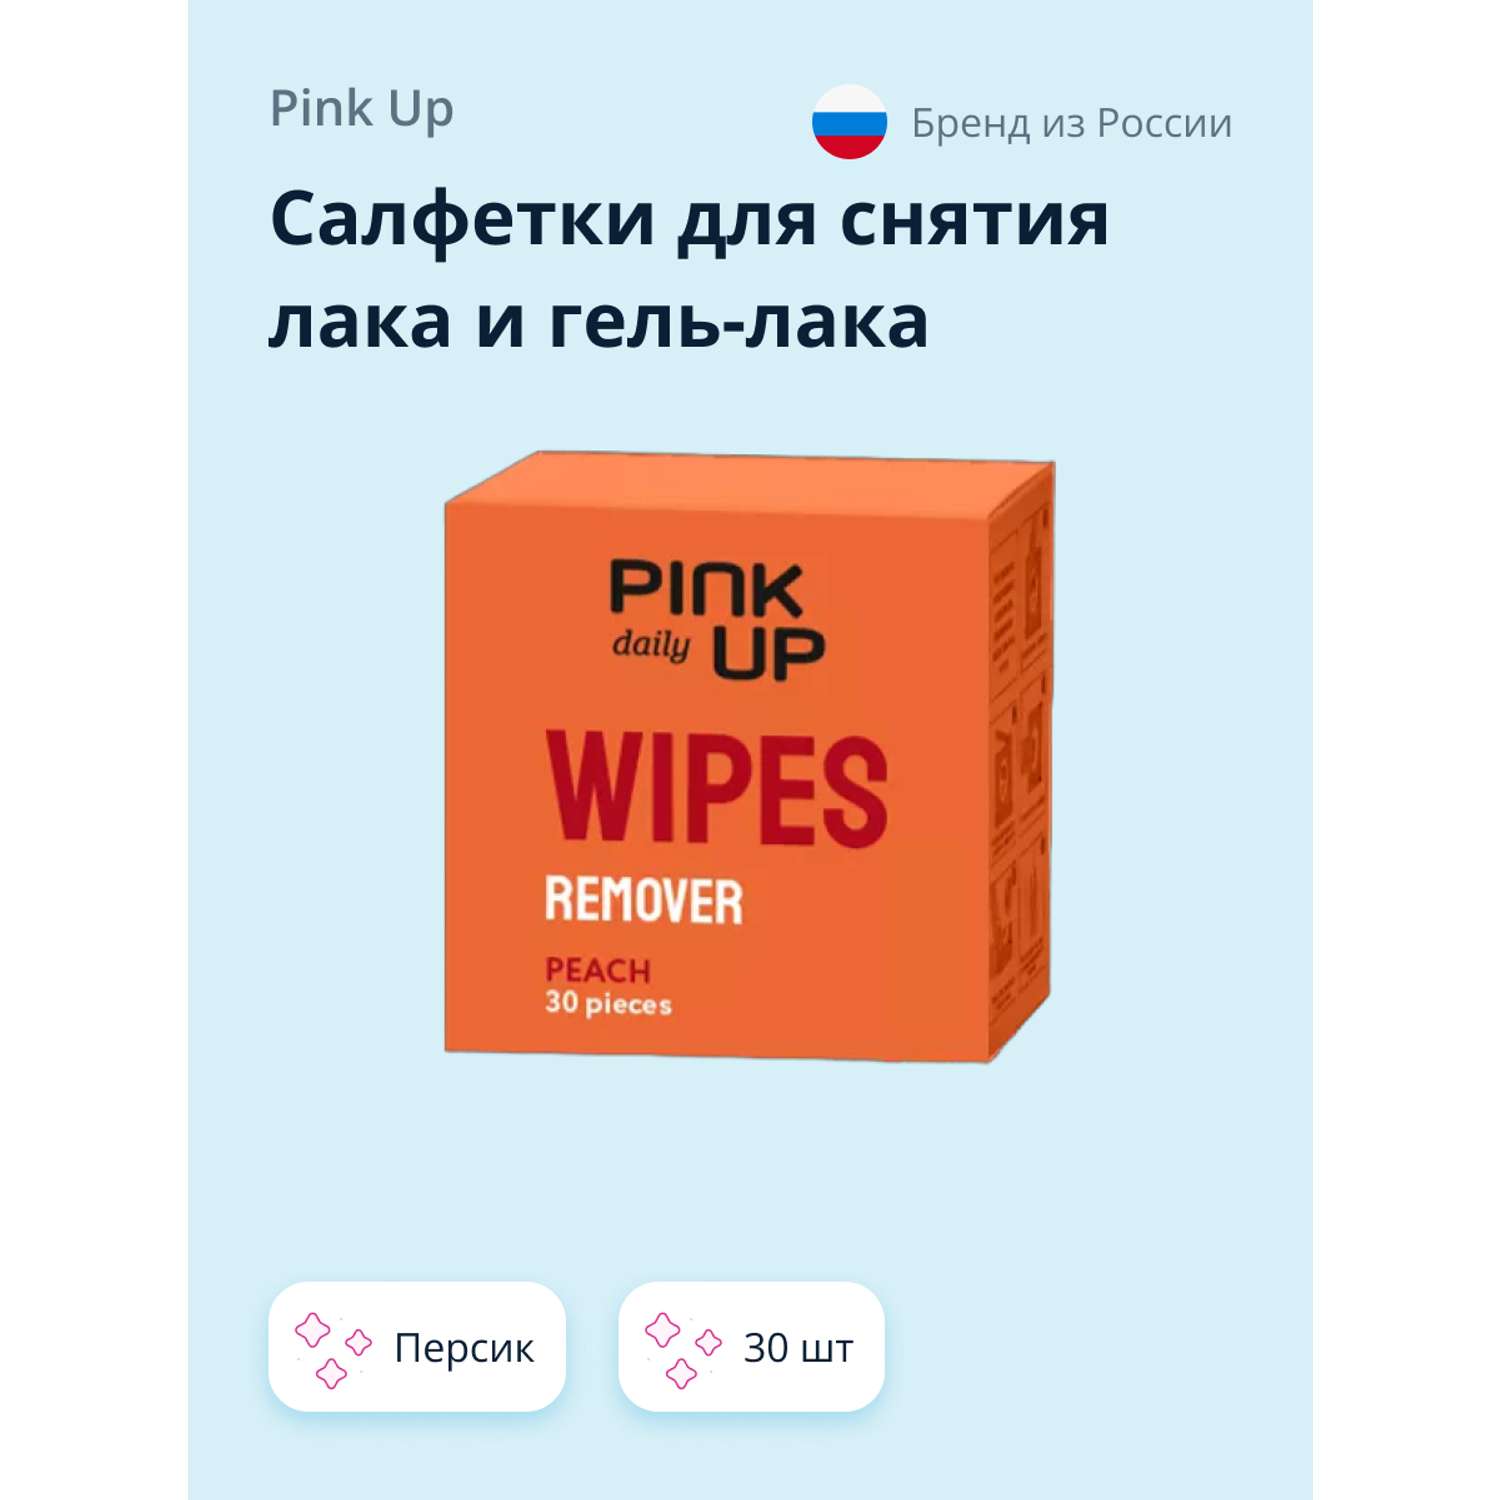 Салфетки Pink Up daily для снятия лака и гель-лака персик 30 шт - фото 1